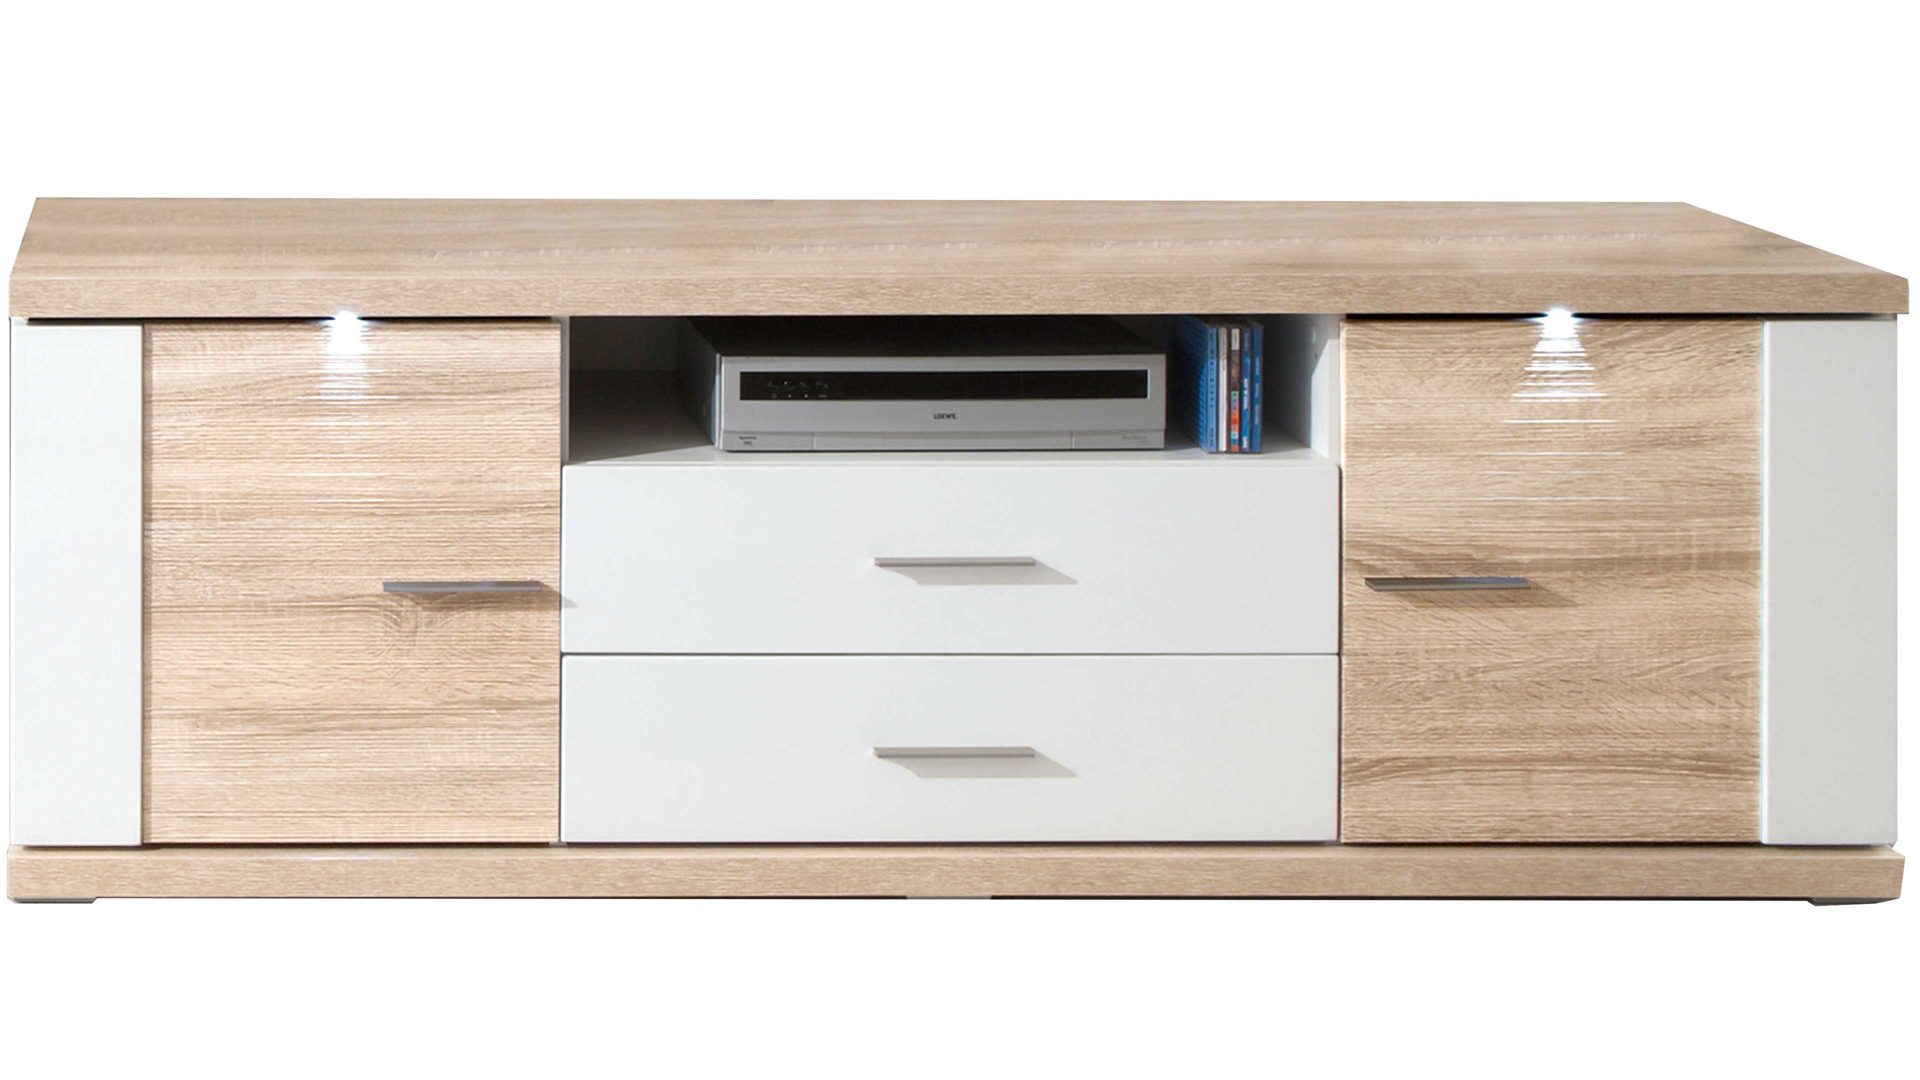 Lowboard Ideal möbel aus Holz in Holzfarben Medien-Lowboard Manhattan Weiß & Eiche sägerau – zwei Türen, zwei Schubladen, Länge ca. 179 cm